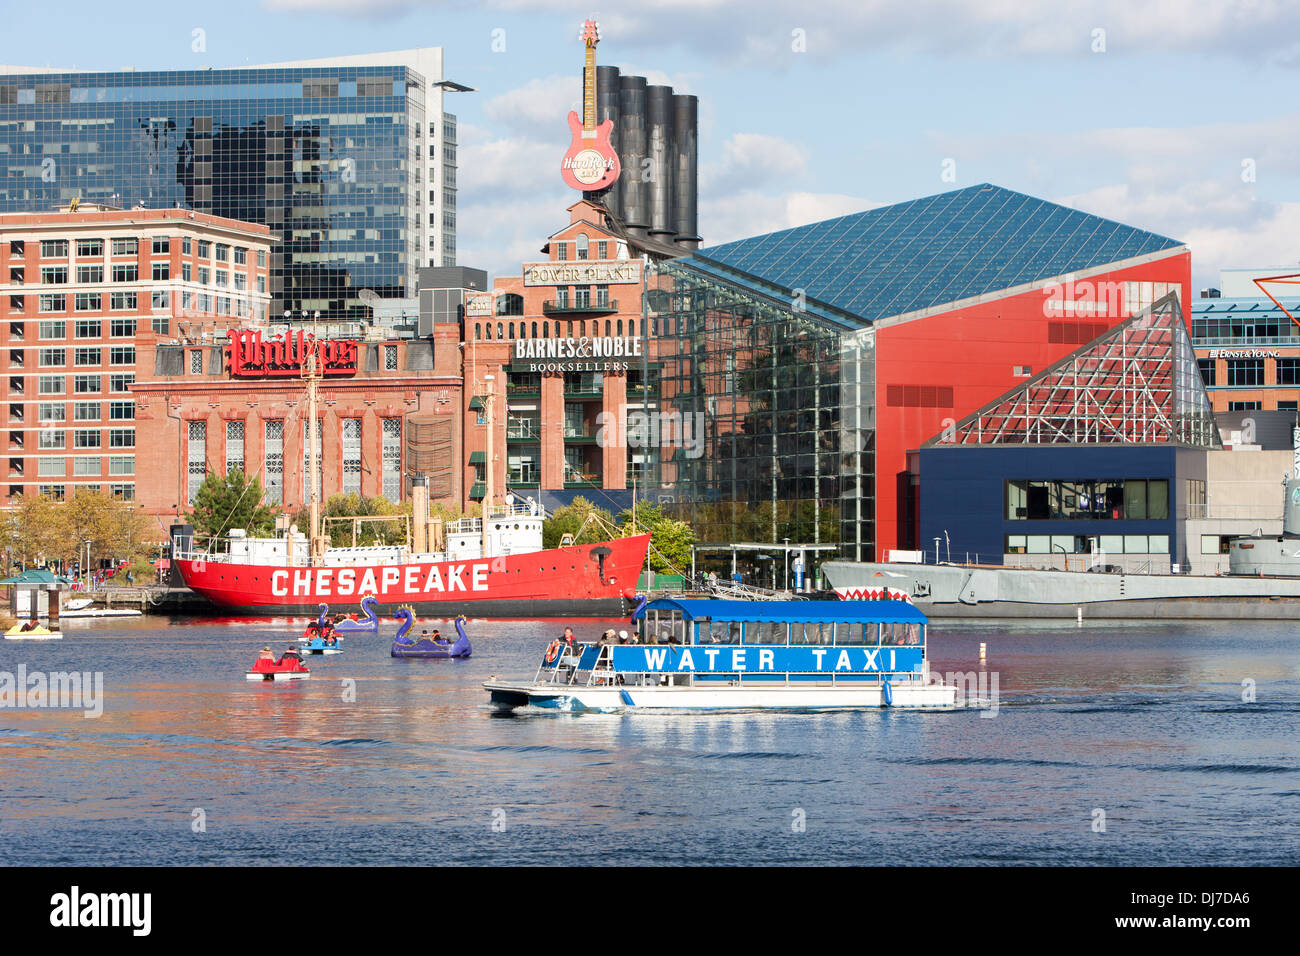 Les touristes profiter des bateaux à aube comme un taxi d'eau approche le Harborplace atterrissage dans l'Inner Harbor de Baltimore, Maryland. Banque D'Images